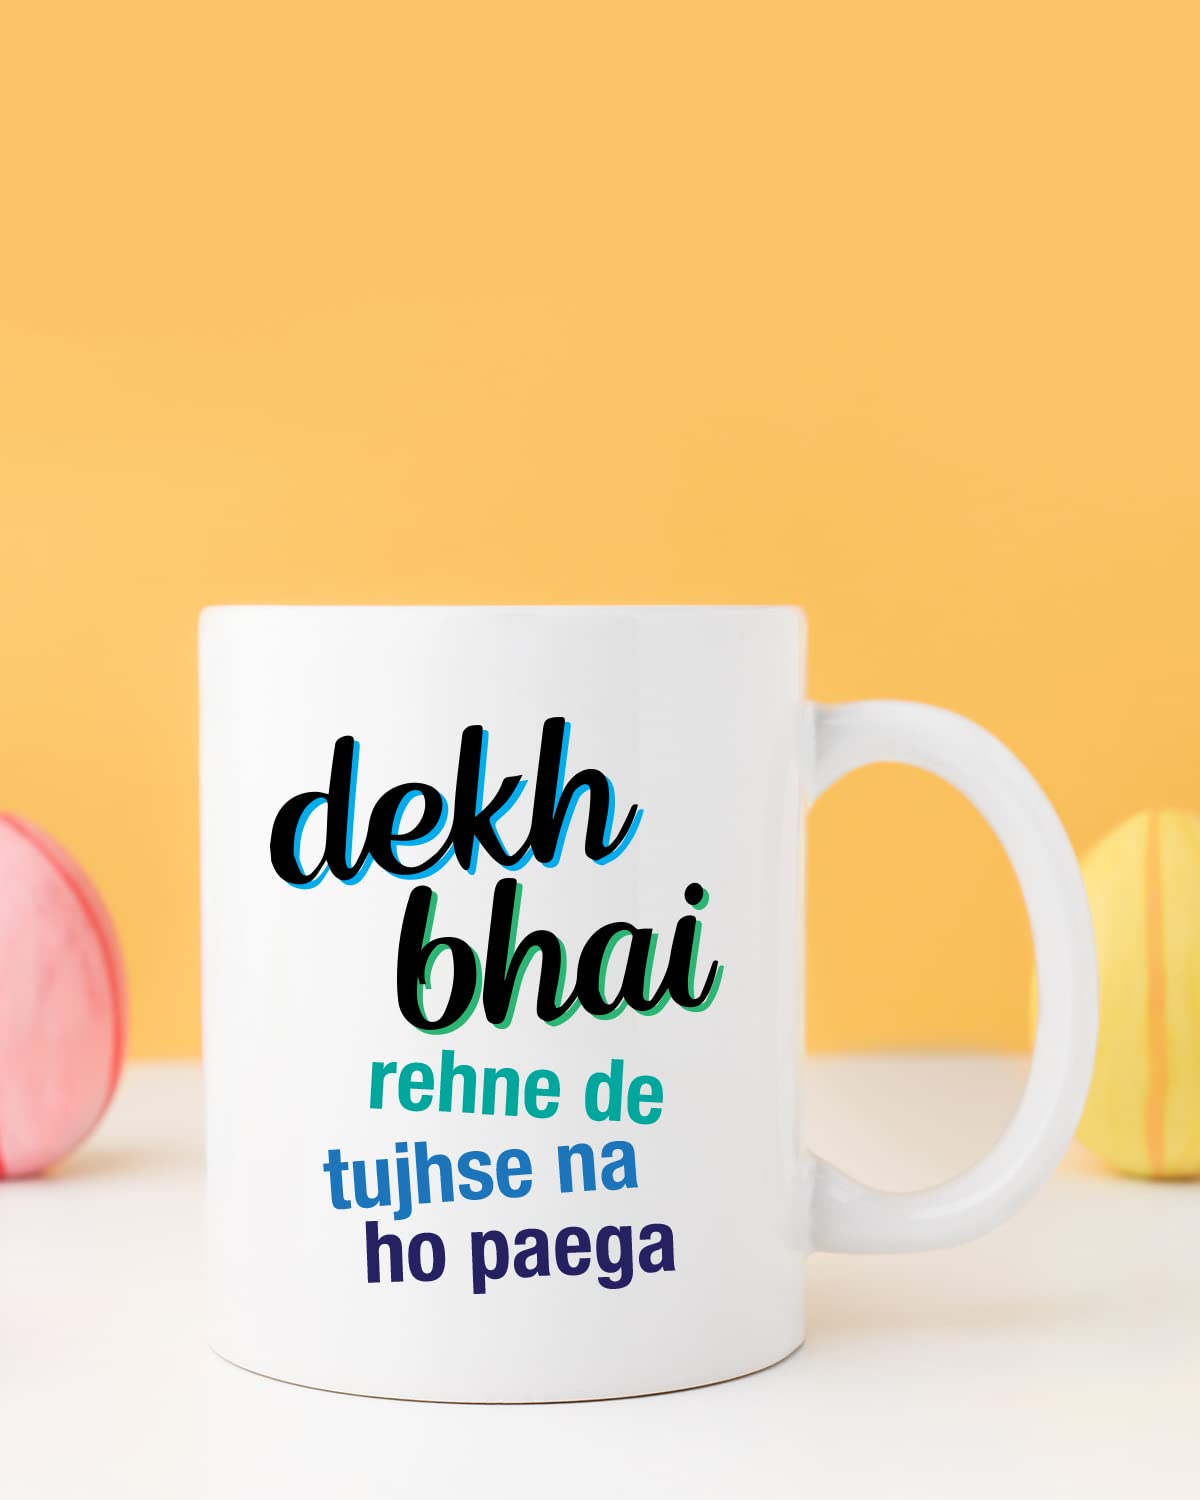 TUJHSE NA HO PAEGA Coffee Mug - Gift for Friend, Birthday Gift, Birthday Mug, Sarcasm Quotes Mug, Mugs with Funny & Funky Dialogues, Bollywood Mugs, Funny Mugs for Him & Her